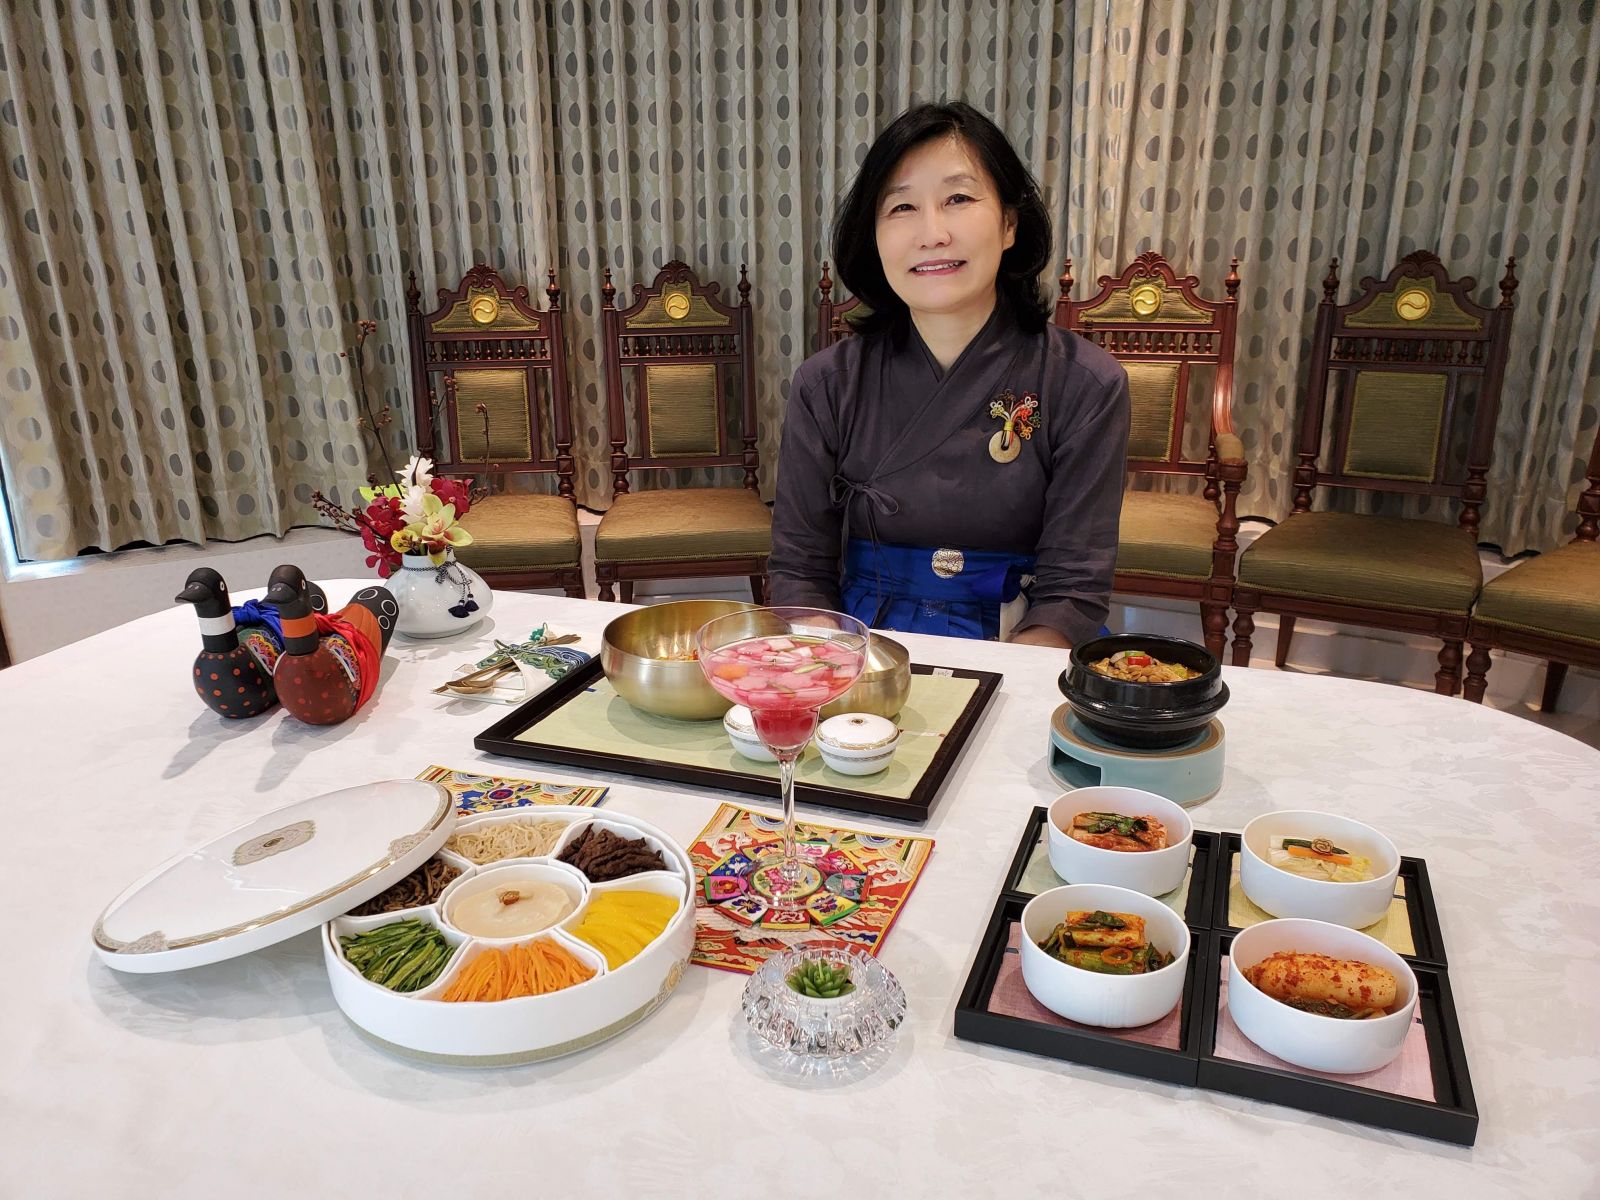 Korean Cuisine: Healthy, Tasty And Stylish